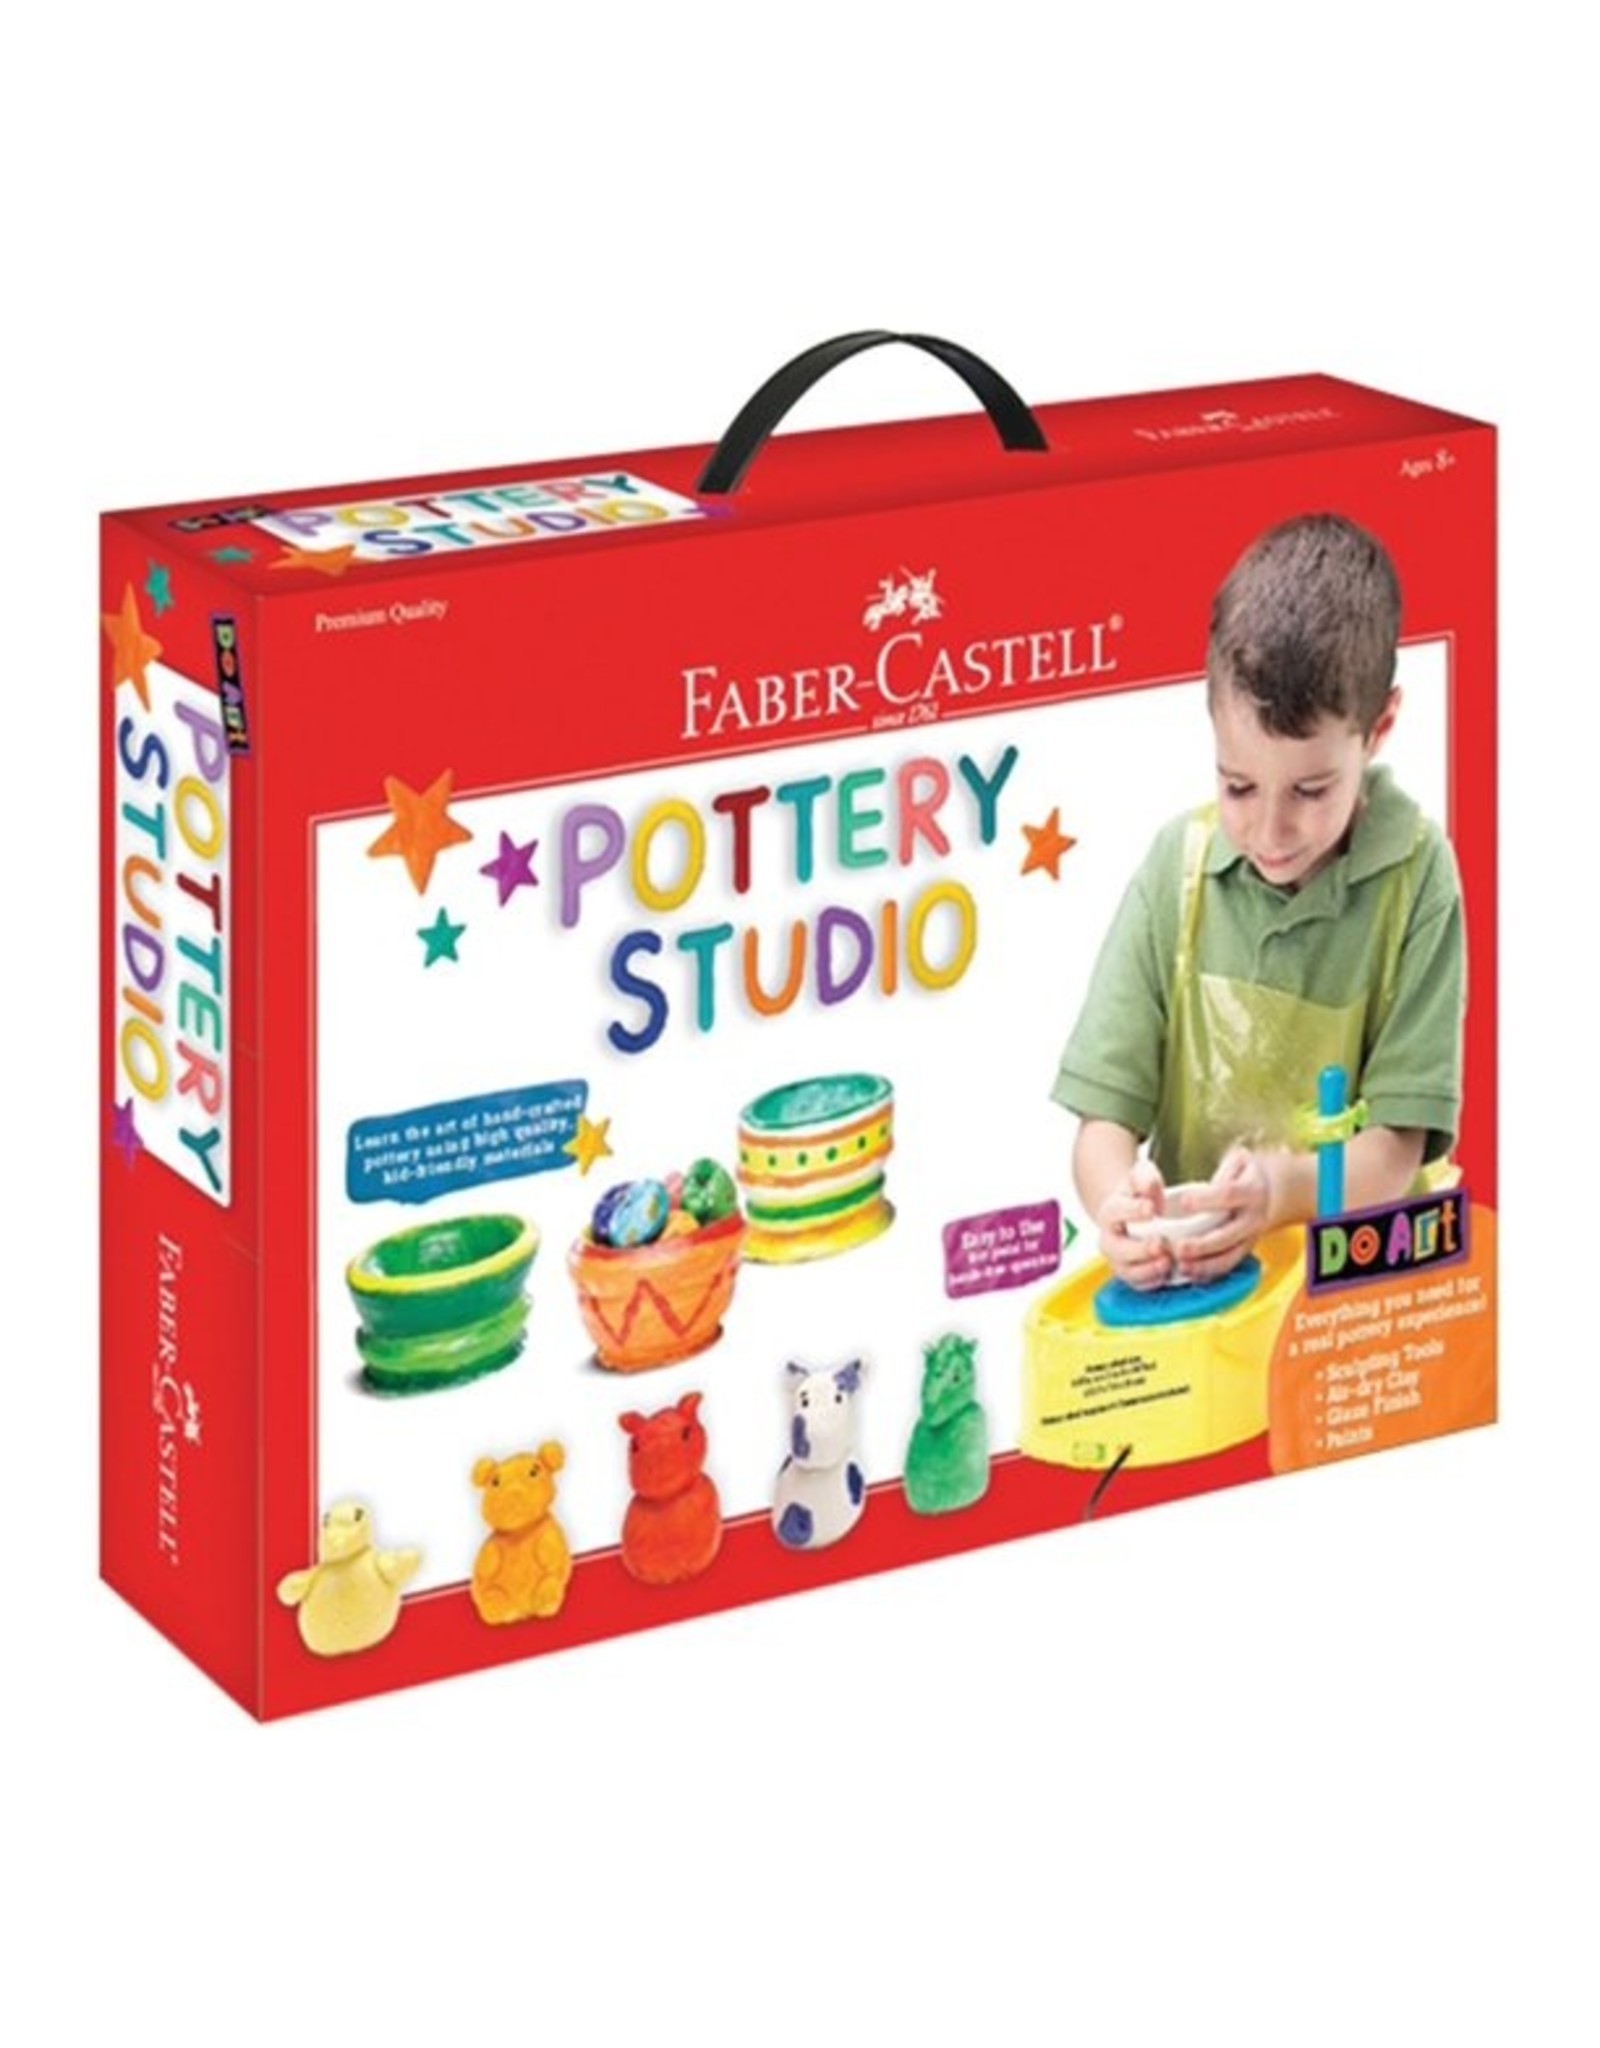 Pottery Studio